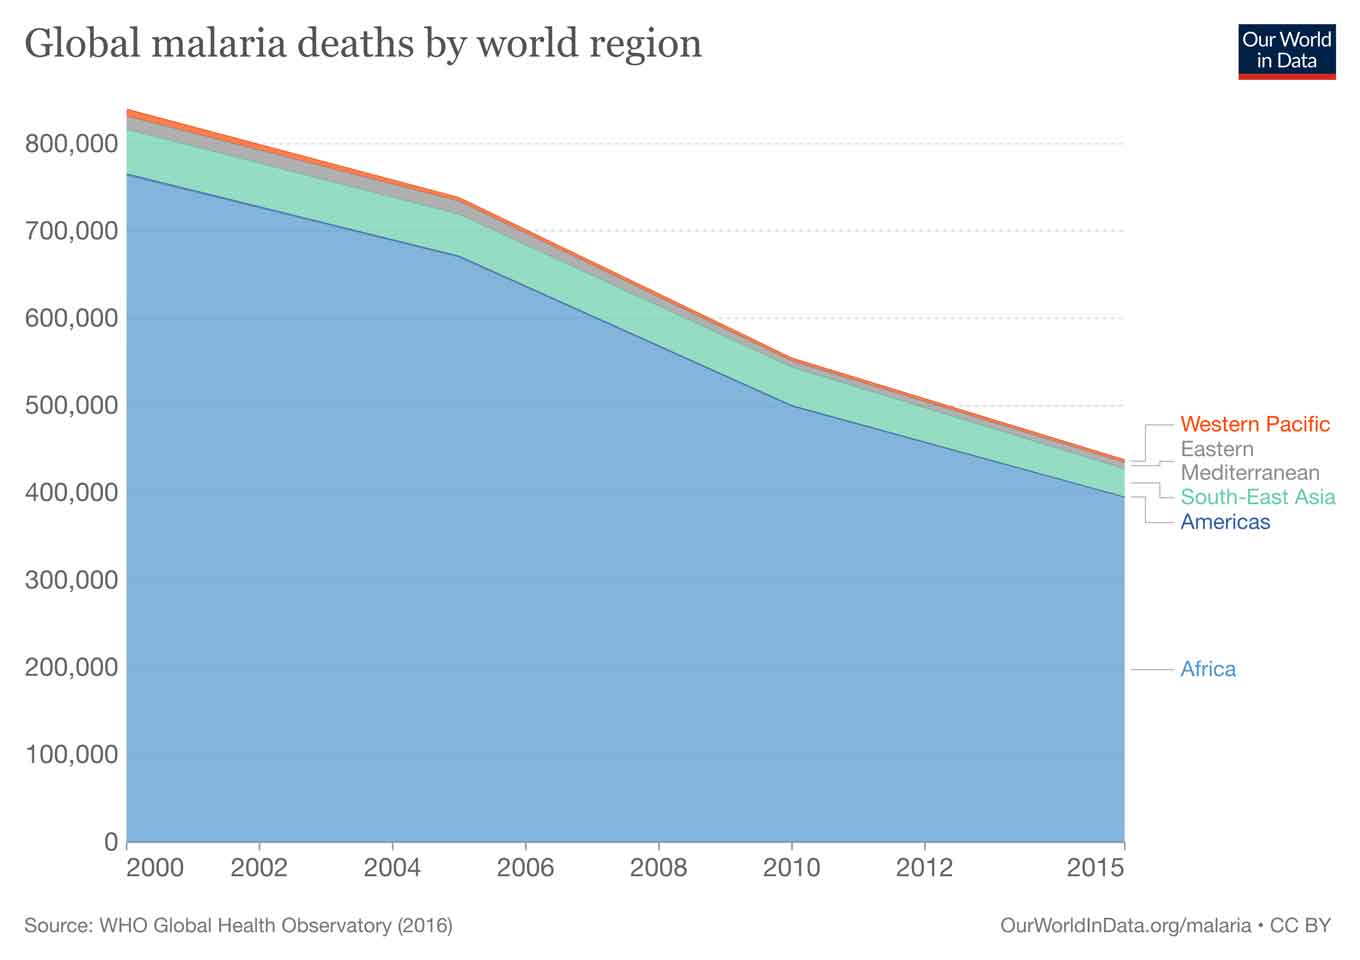 Schattingen van malariasterfte van de WHO Sinds het begin van de 21e eeuw heeft de WHO wereldwijde schattingen gepubliceerd van het aantal mensen dat sterft aan malaria. In deze 15 jaar is het wereldwijde dodental gehalveerd: van 839.000 doden in 2000 naar 438.000 in 2015.